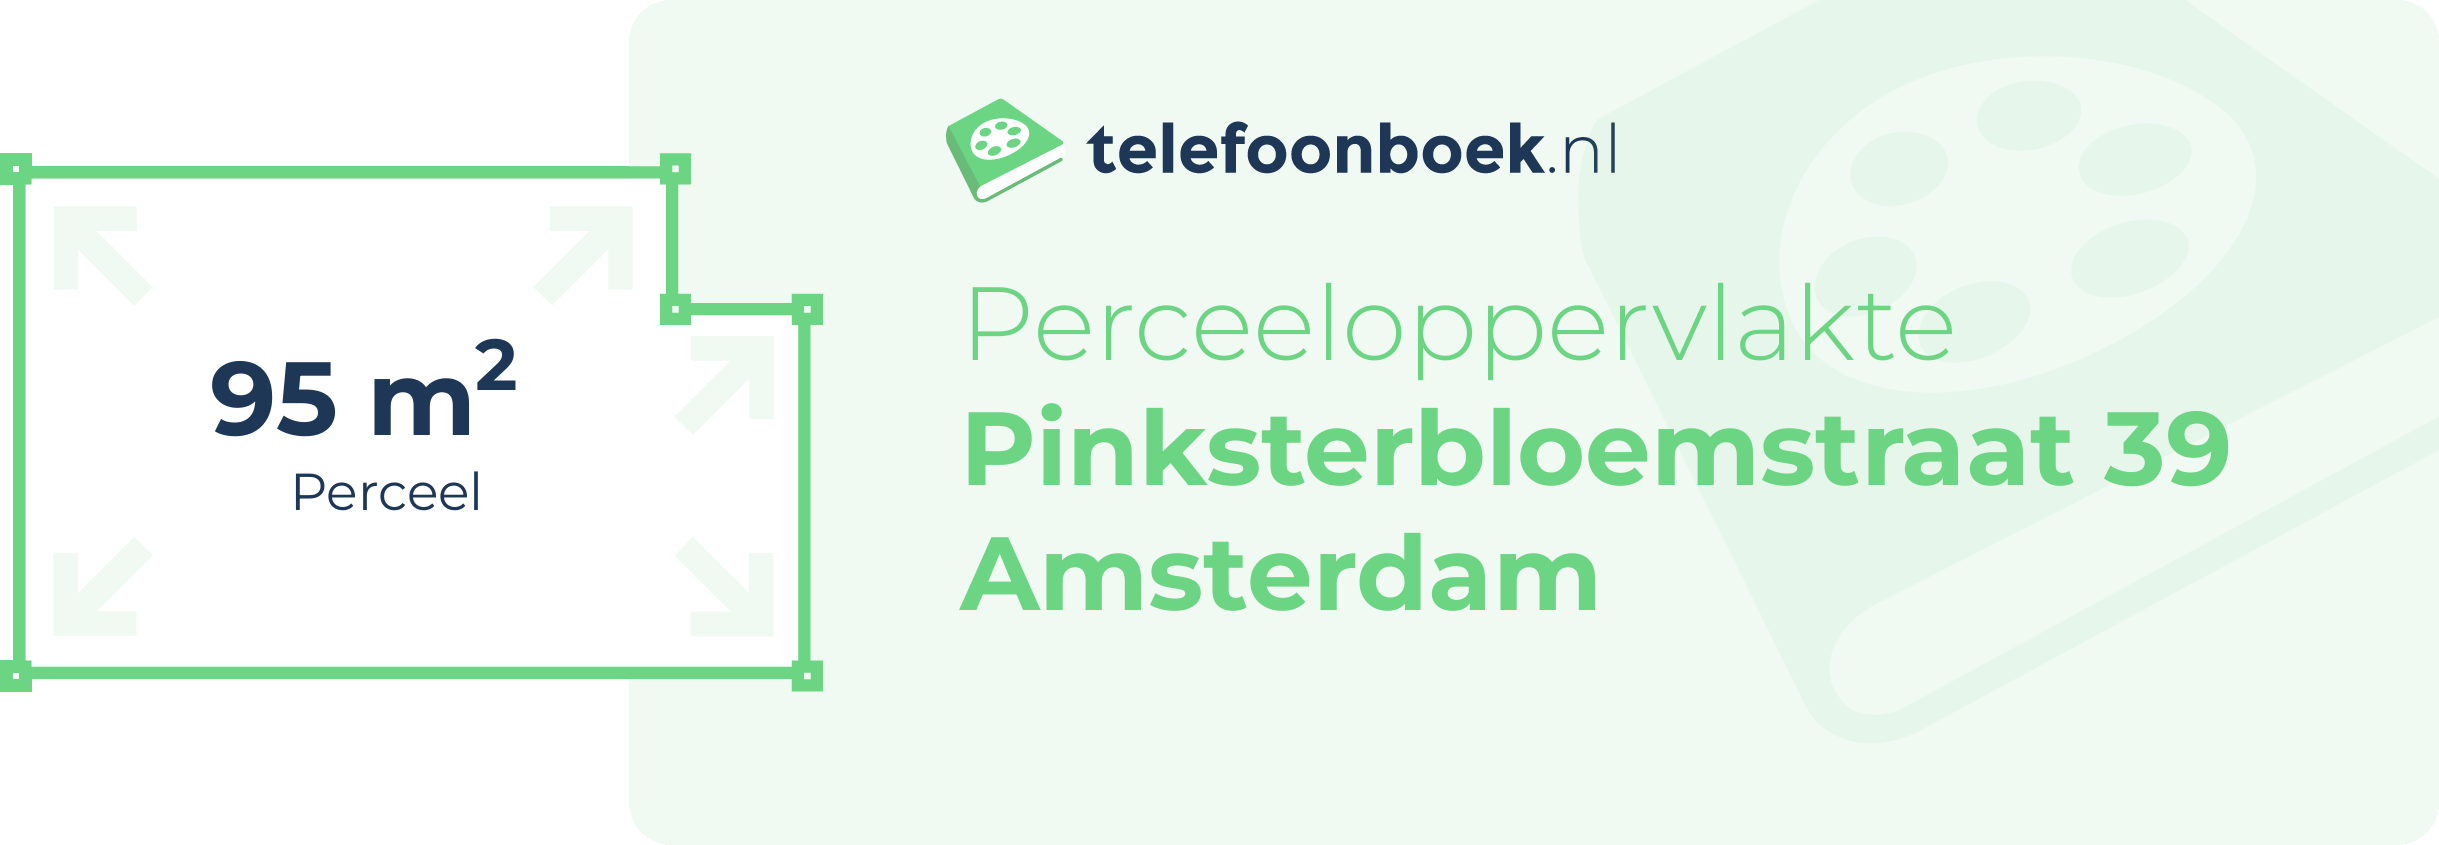 Perceeloppervlakte Pinksterbloemstraat 39 Amsterdam